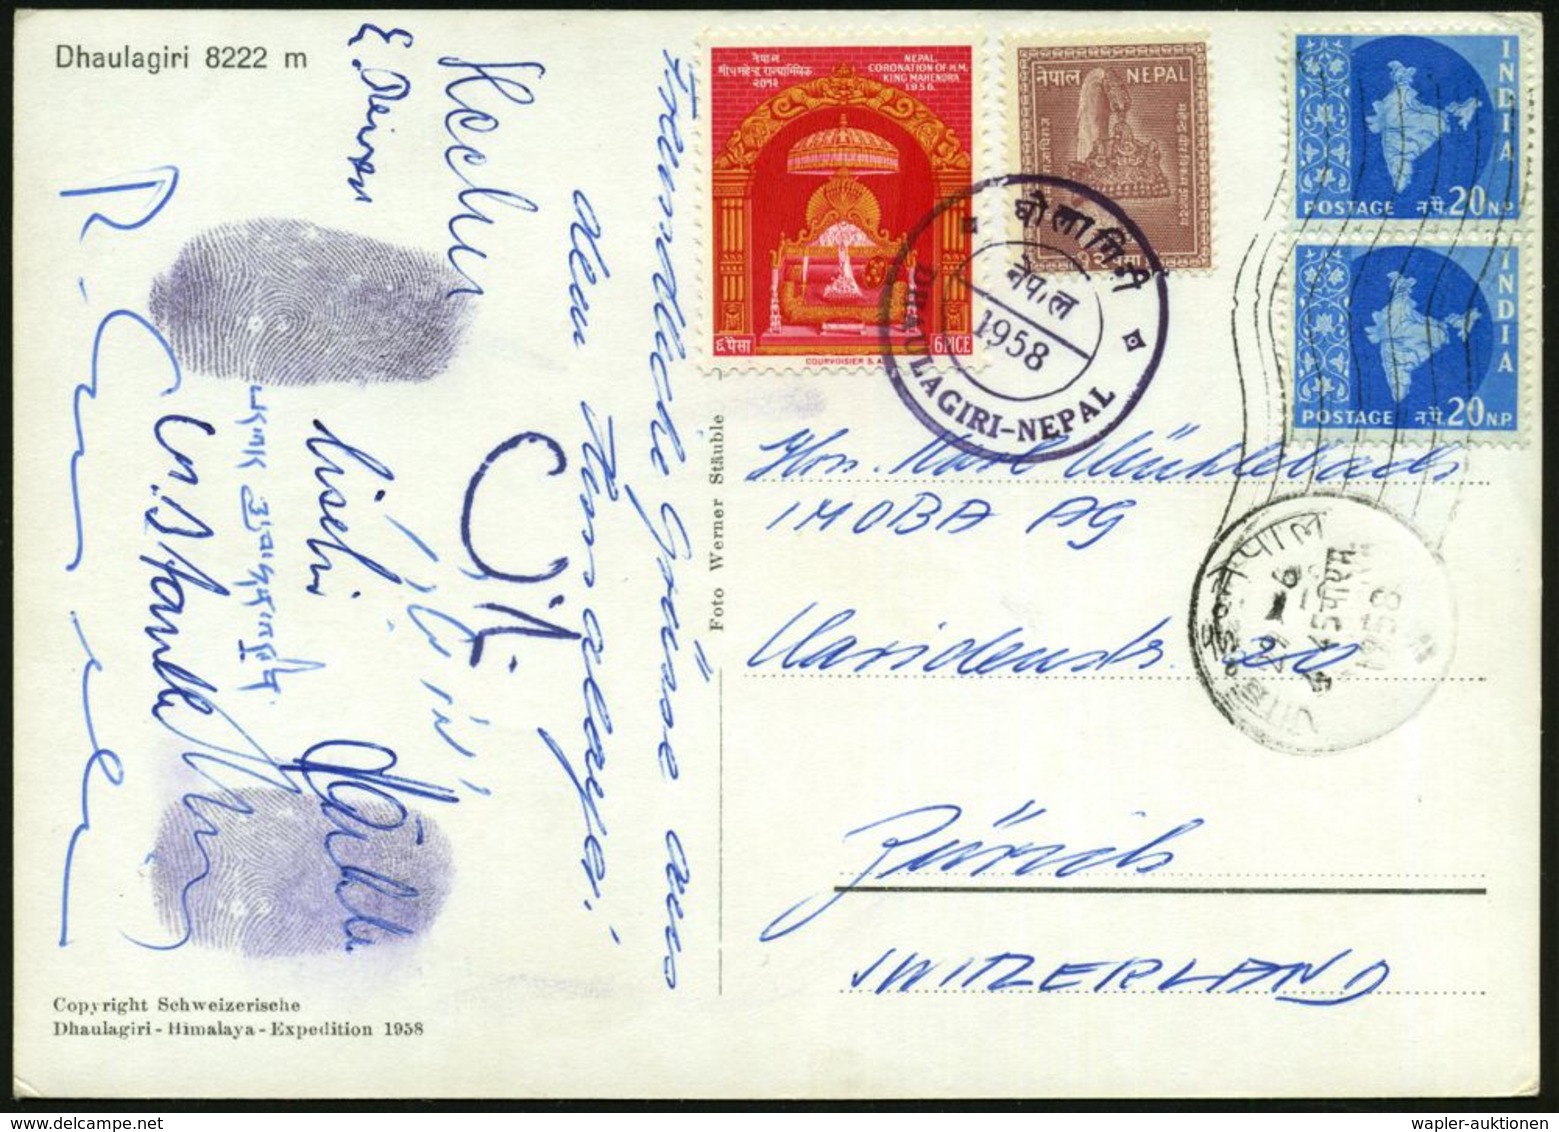 INDIEN /  NEPAL /  SCHWEIZ 1958 (Juni) Schweizer Dhaulagiri-Expedition, Expeditions-Sonderkarte, MiF Indien/Nepal , Viol - Geography